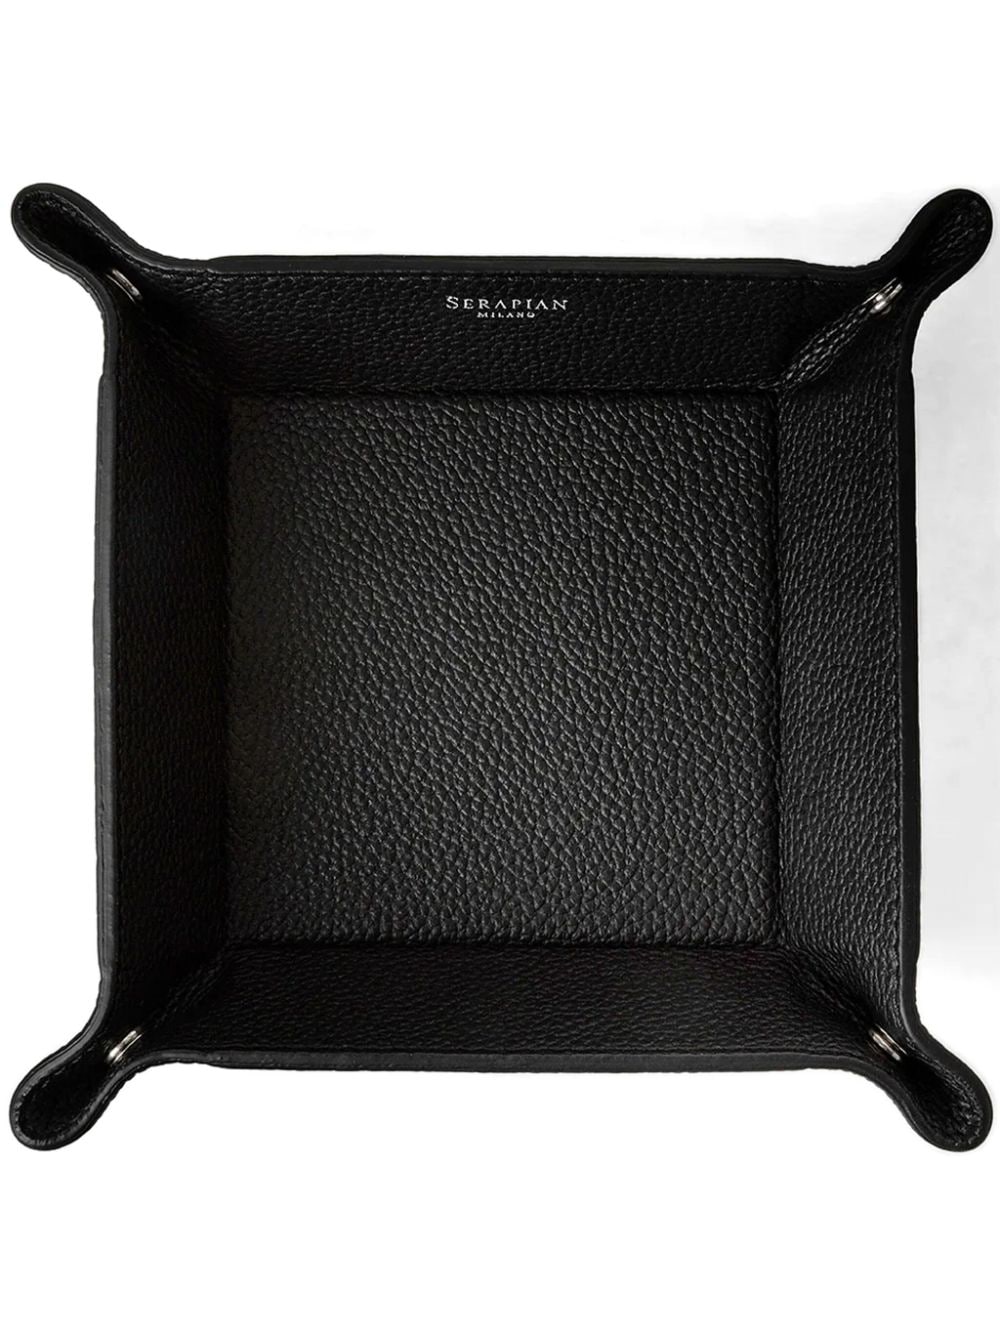 Serapian Cachemire leather desk tray - Black von Serapian